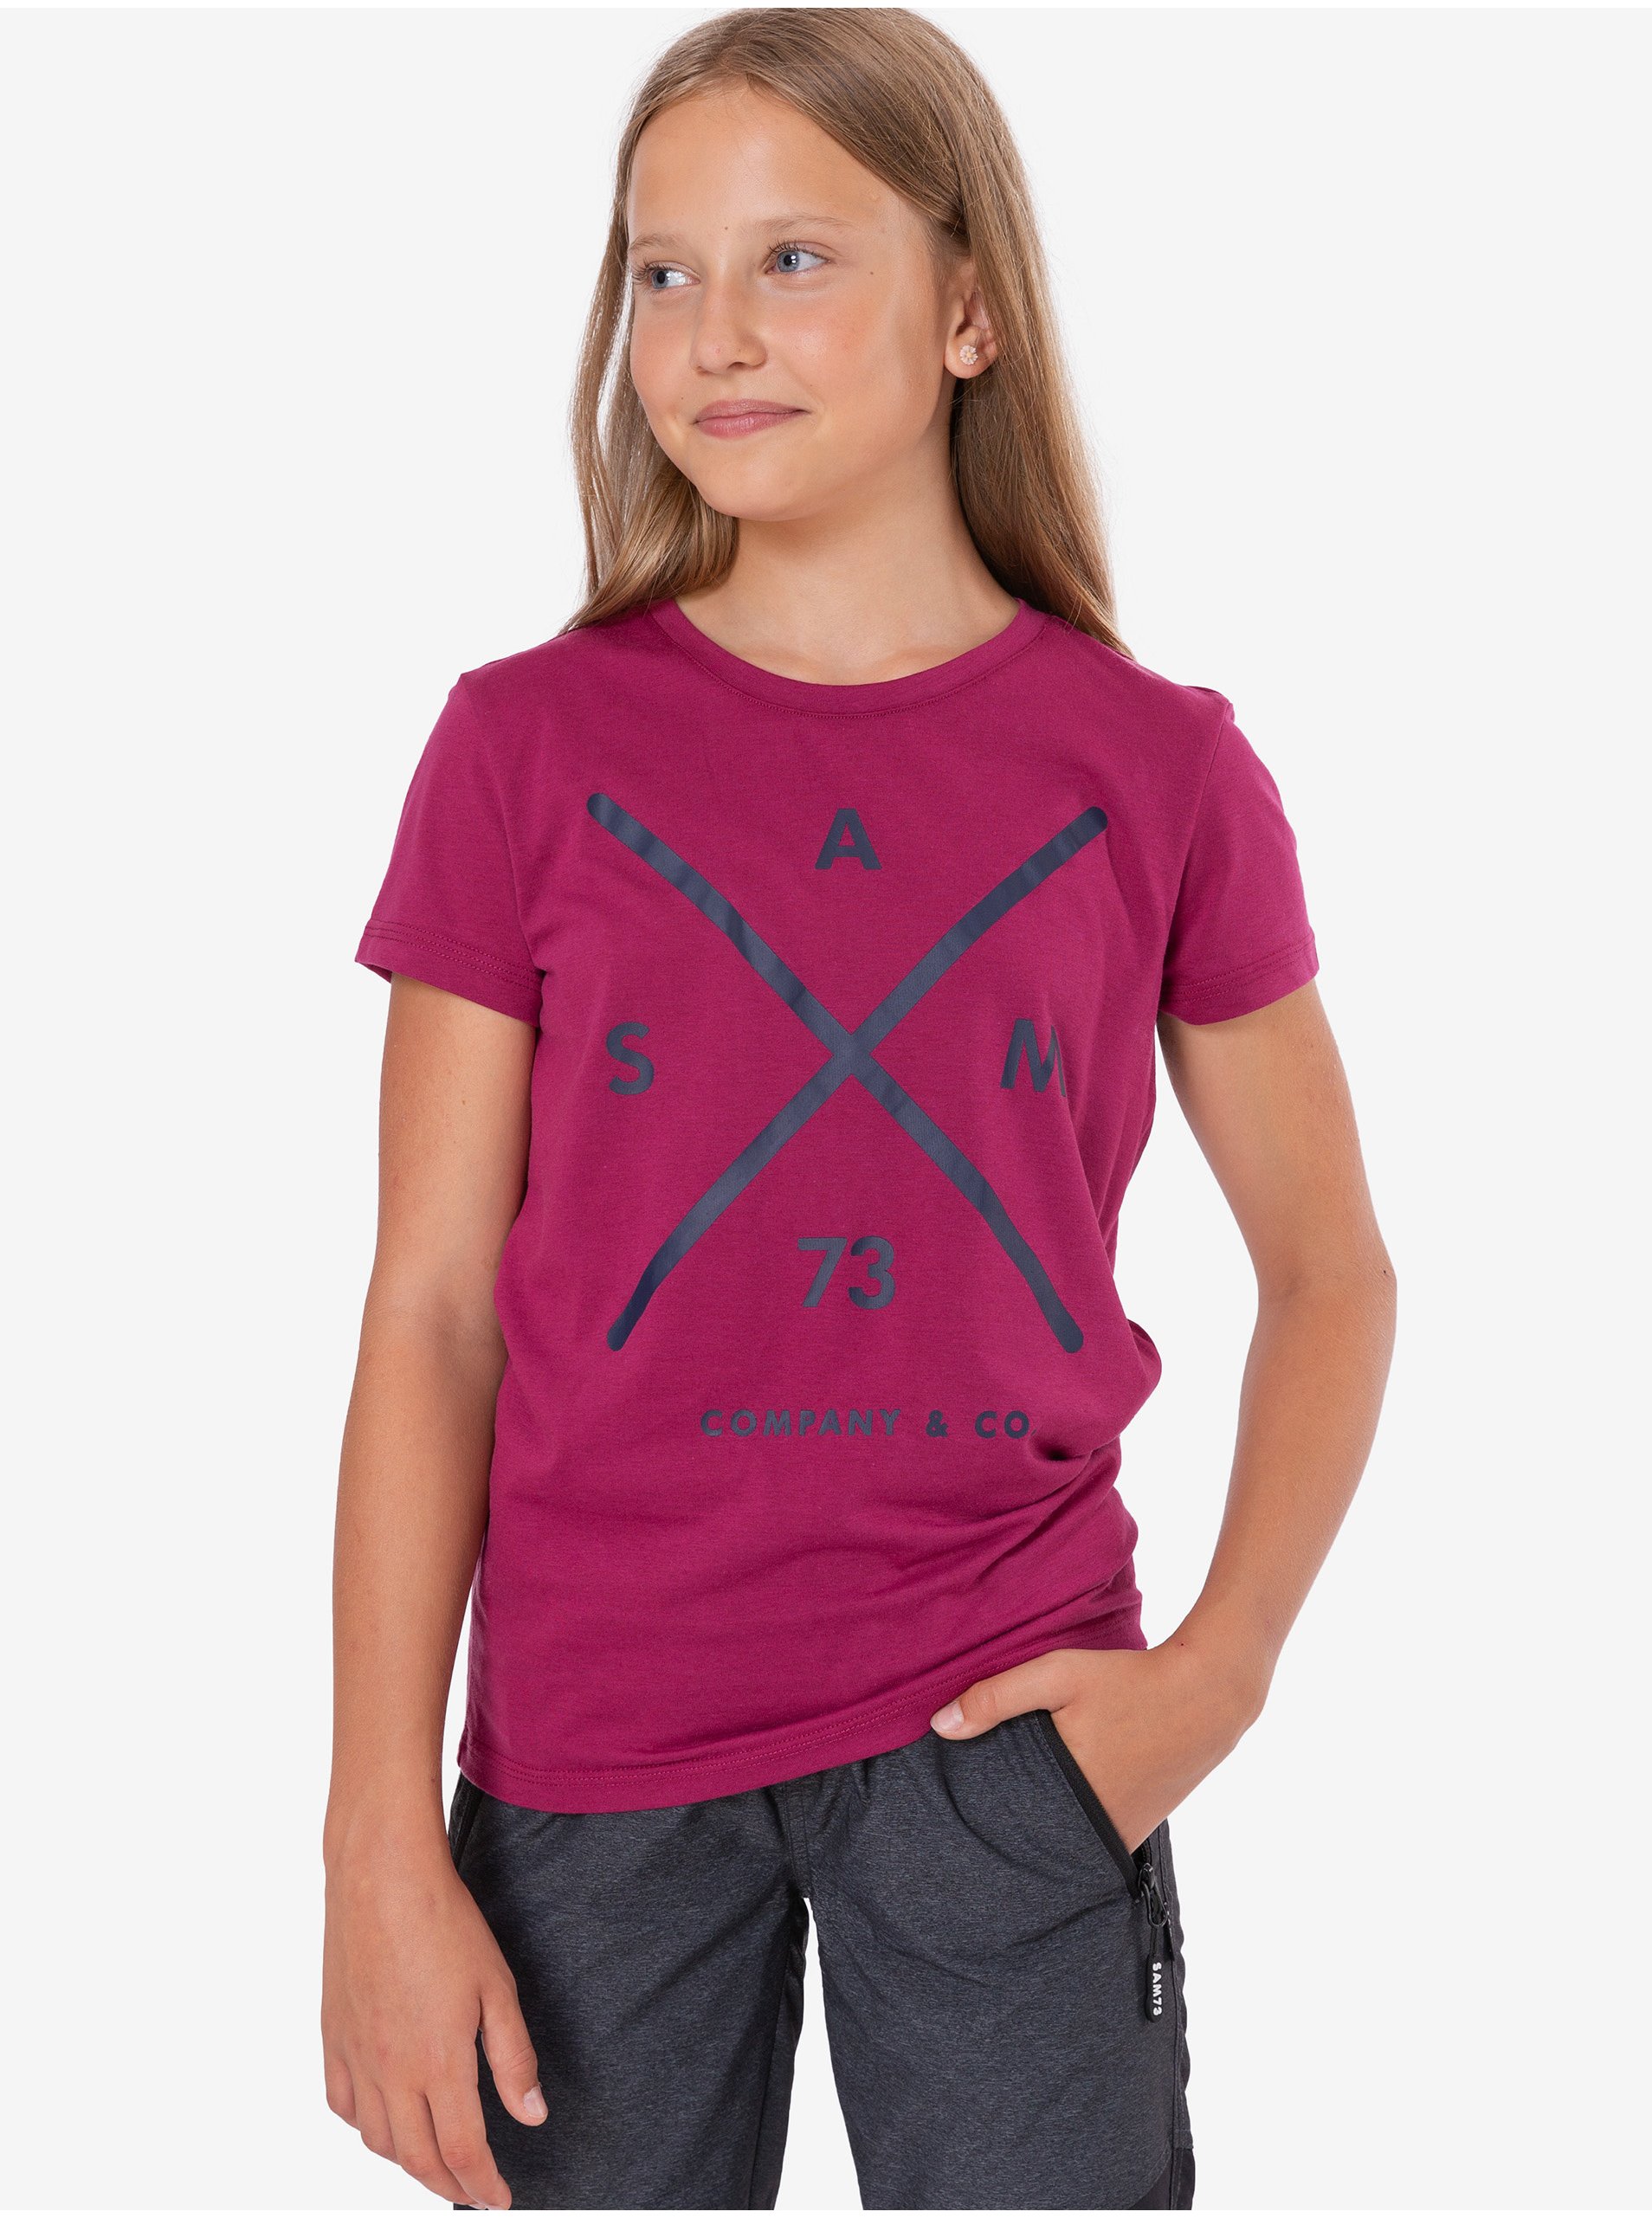 Lacno Tmavoružové dievčenské tričko s potlačou SAM 73 Caroline